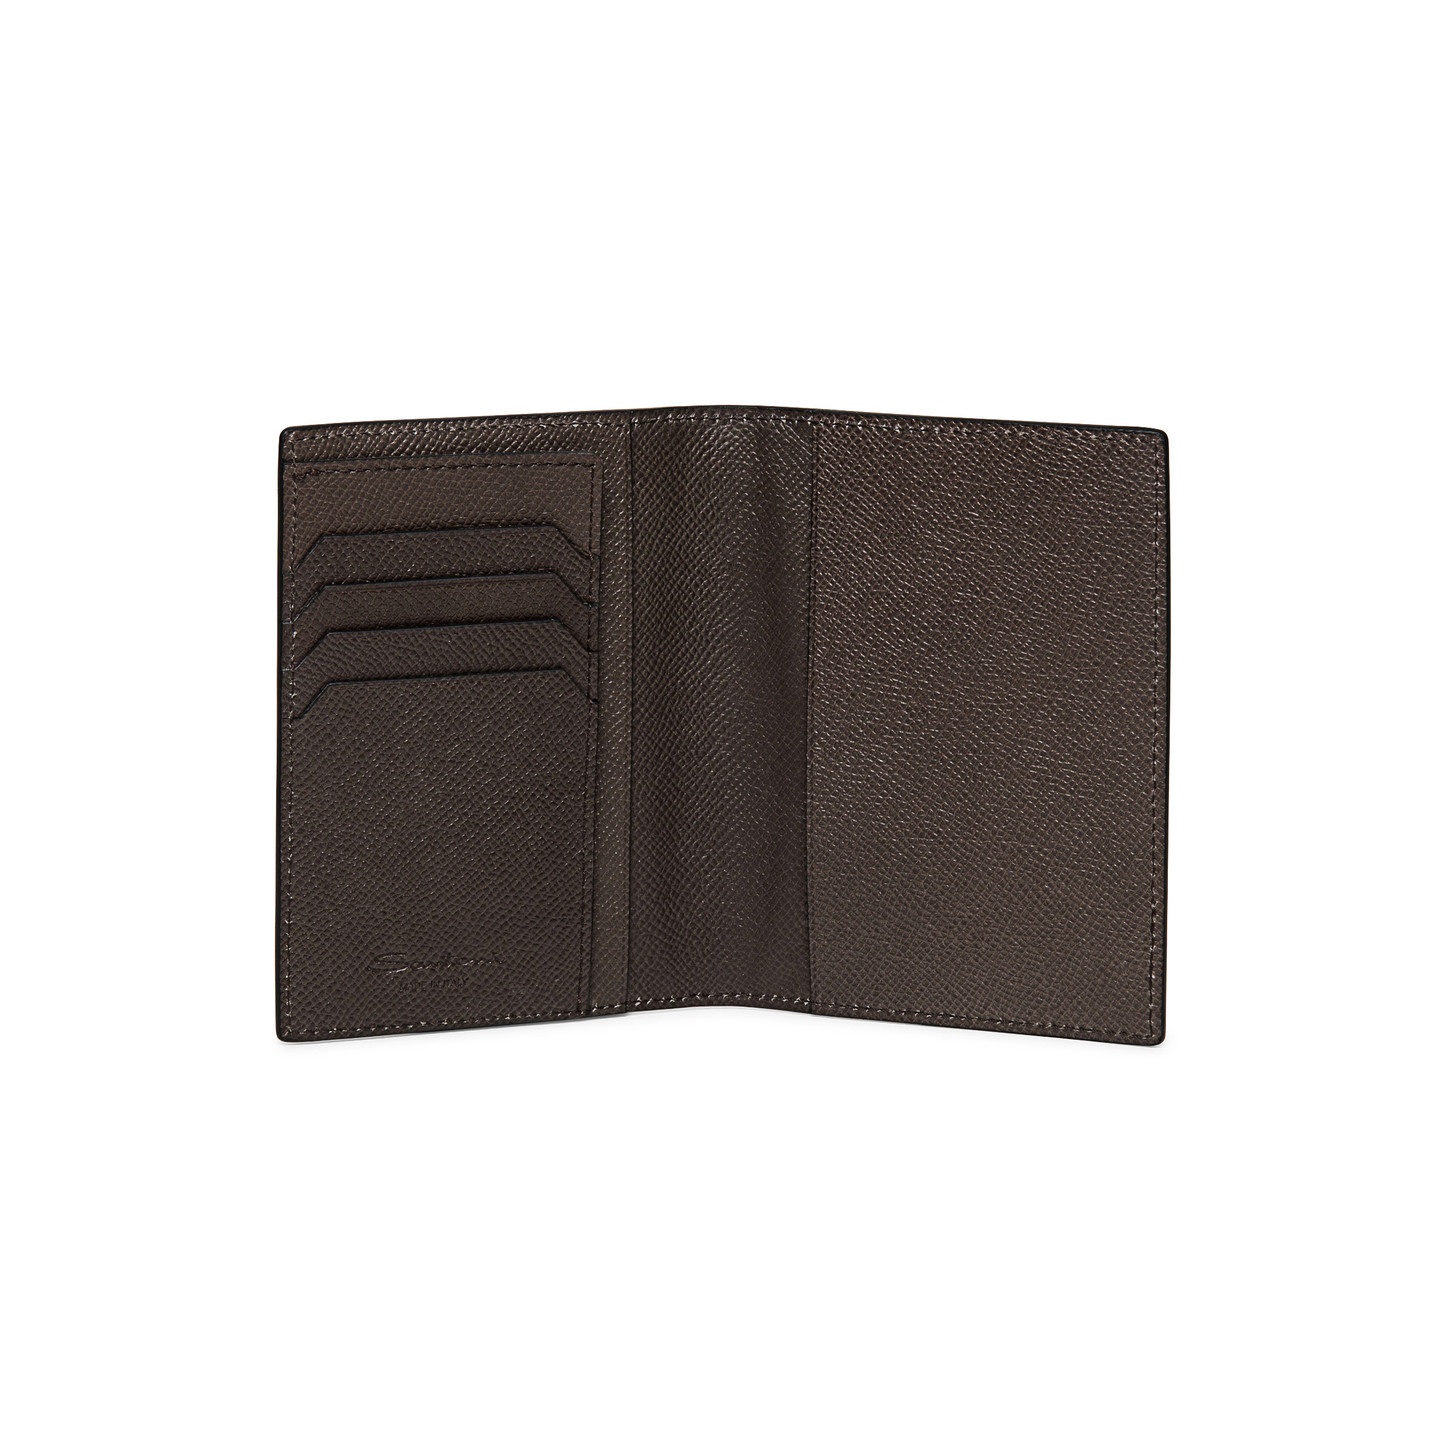 Beige saffiano leather passport case - 3